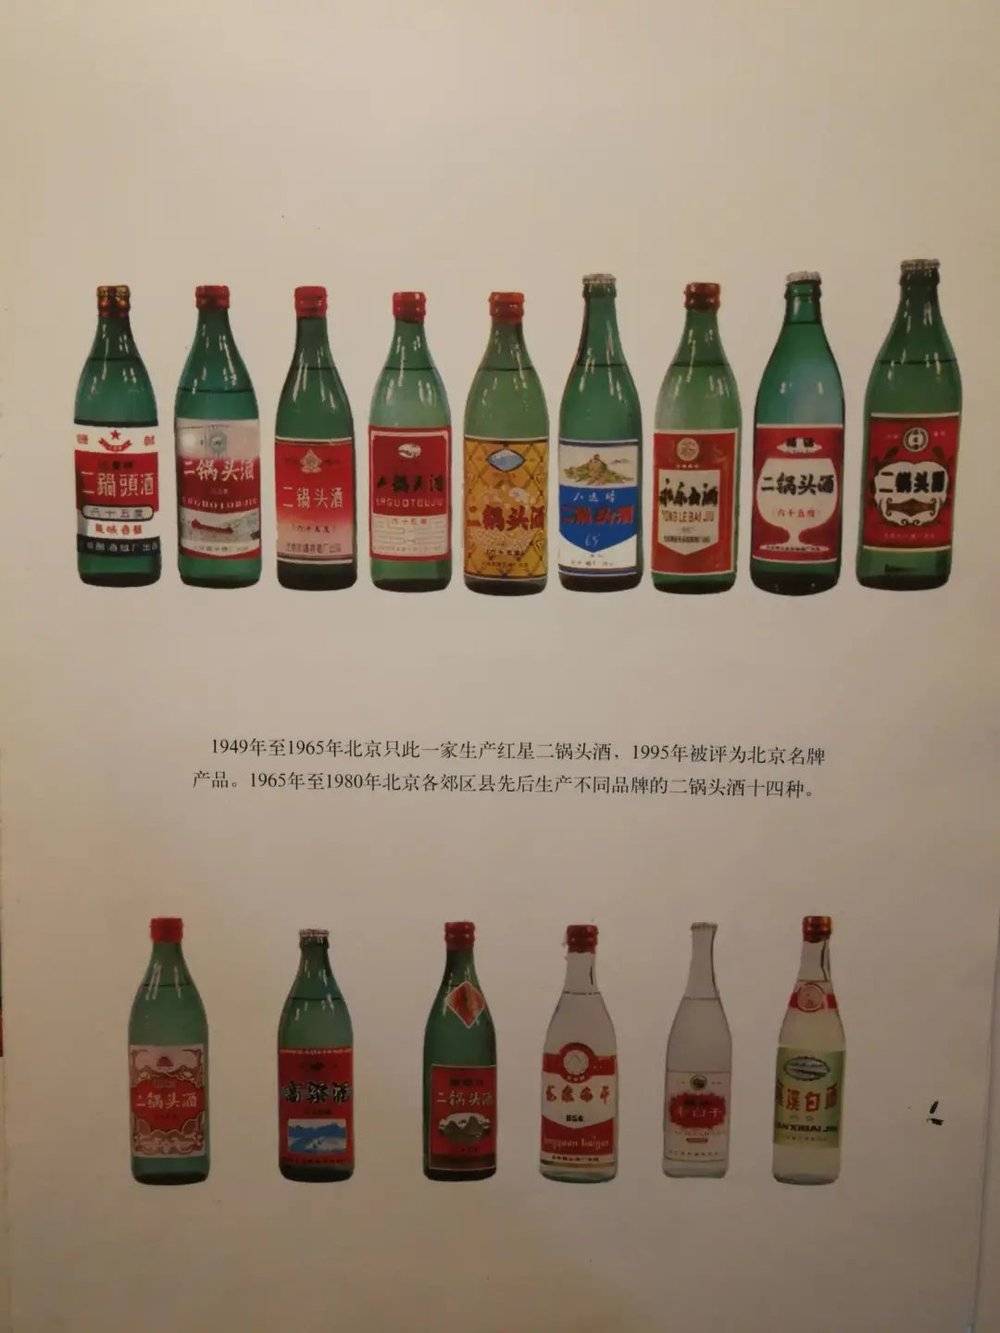 1960、1970 年代，北京郊县酒厂生产的各种二锅头酒<br>